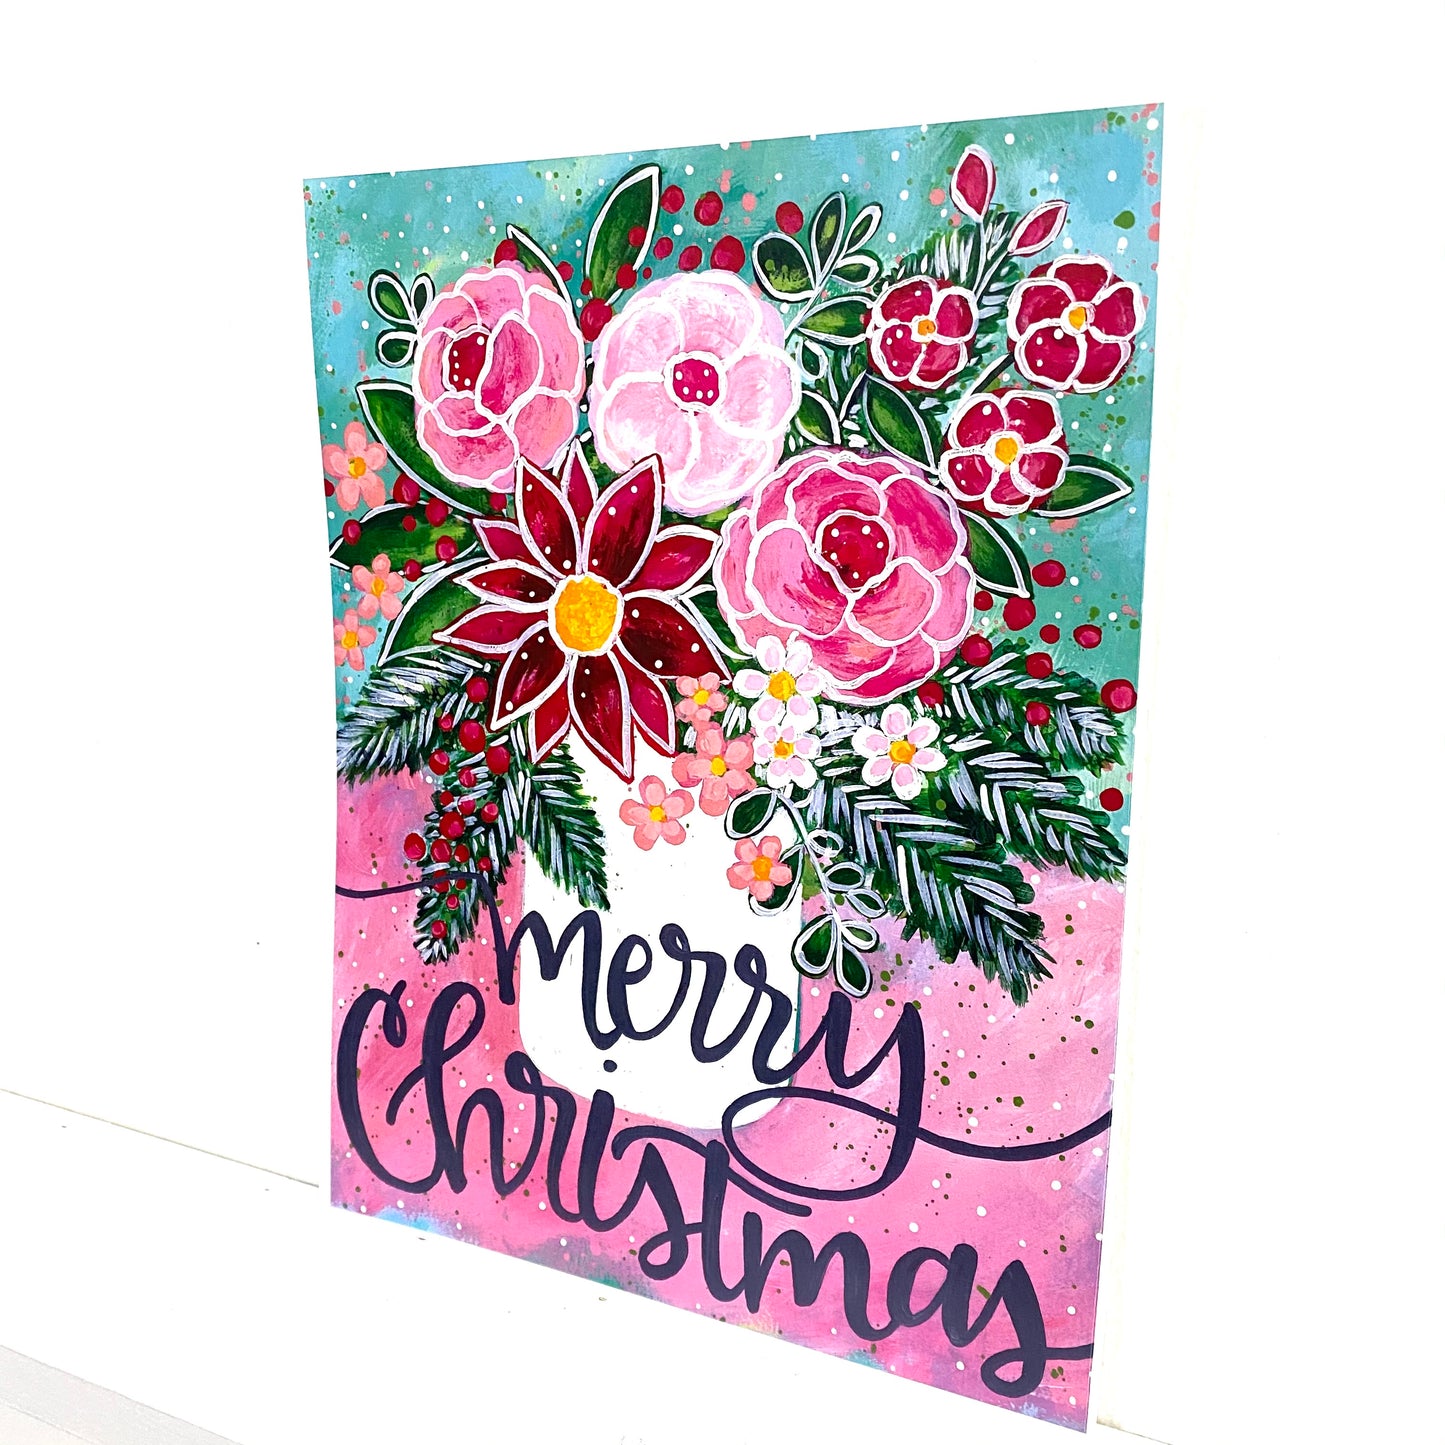 Merry Christmas Floral Bethany Joy Art Print